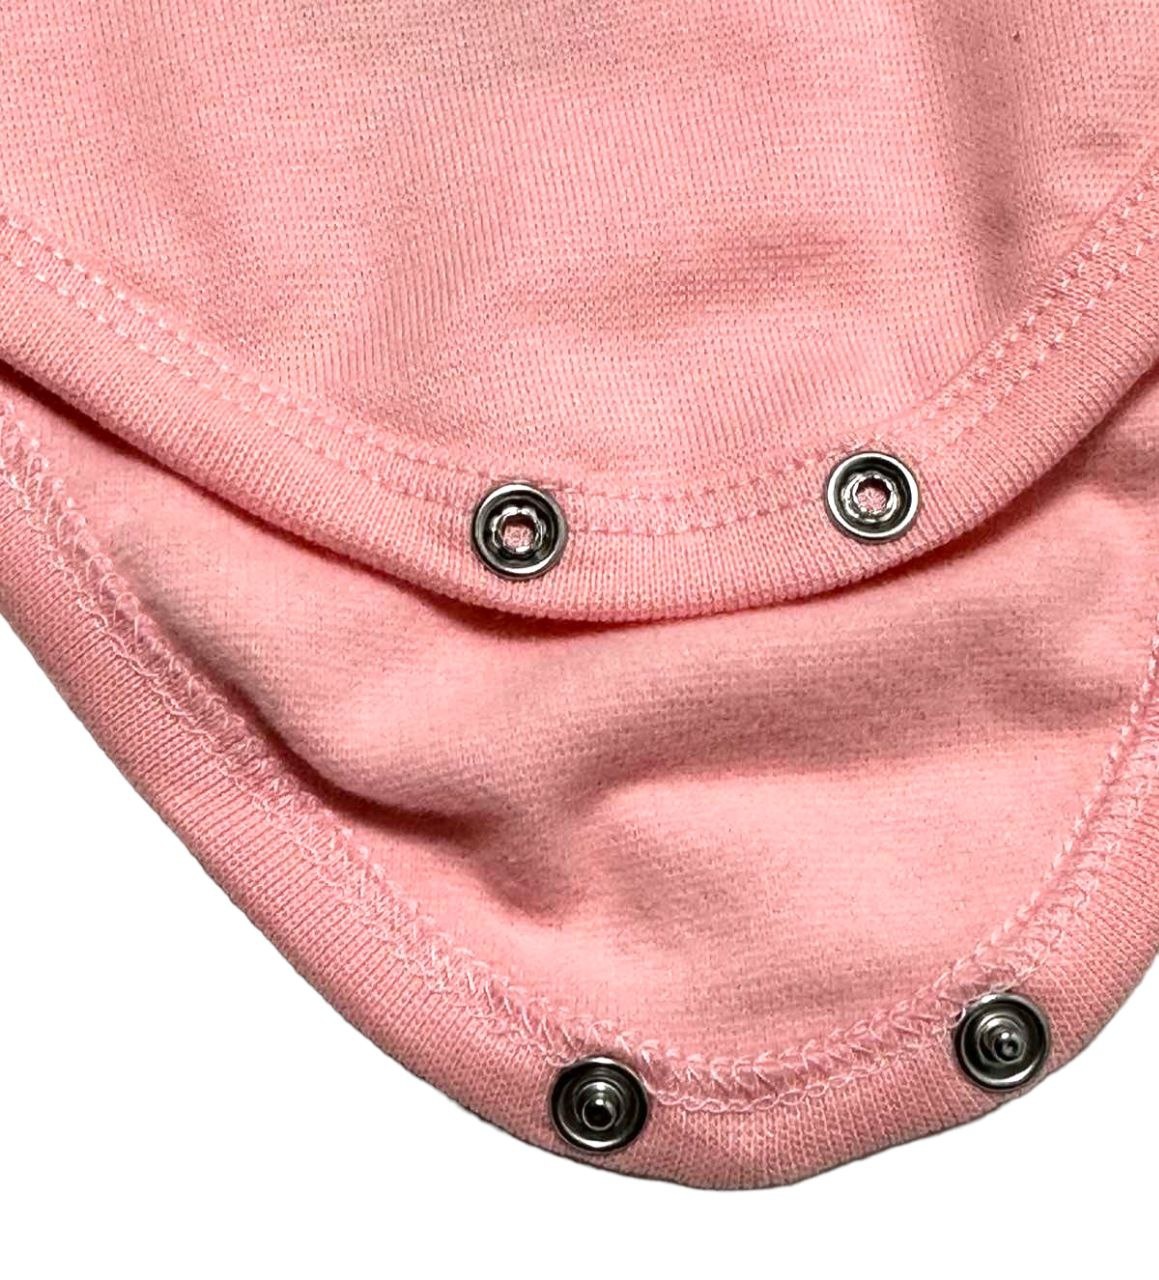 Комплект боді із брючками начесний стрейч інтерлок рожевого кольору, Рожевий, 12-18 місяців, 86см